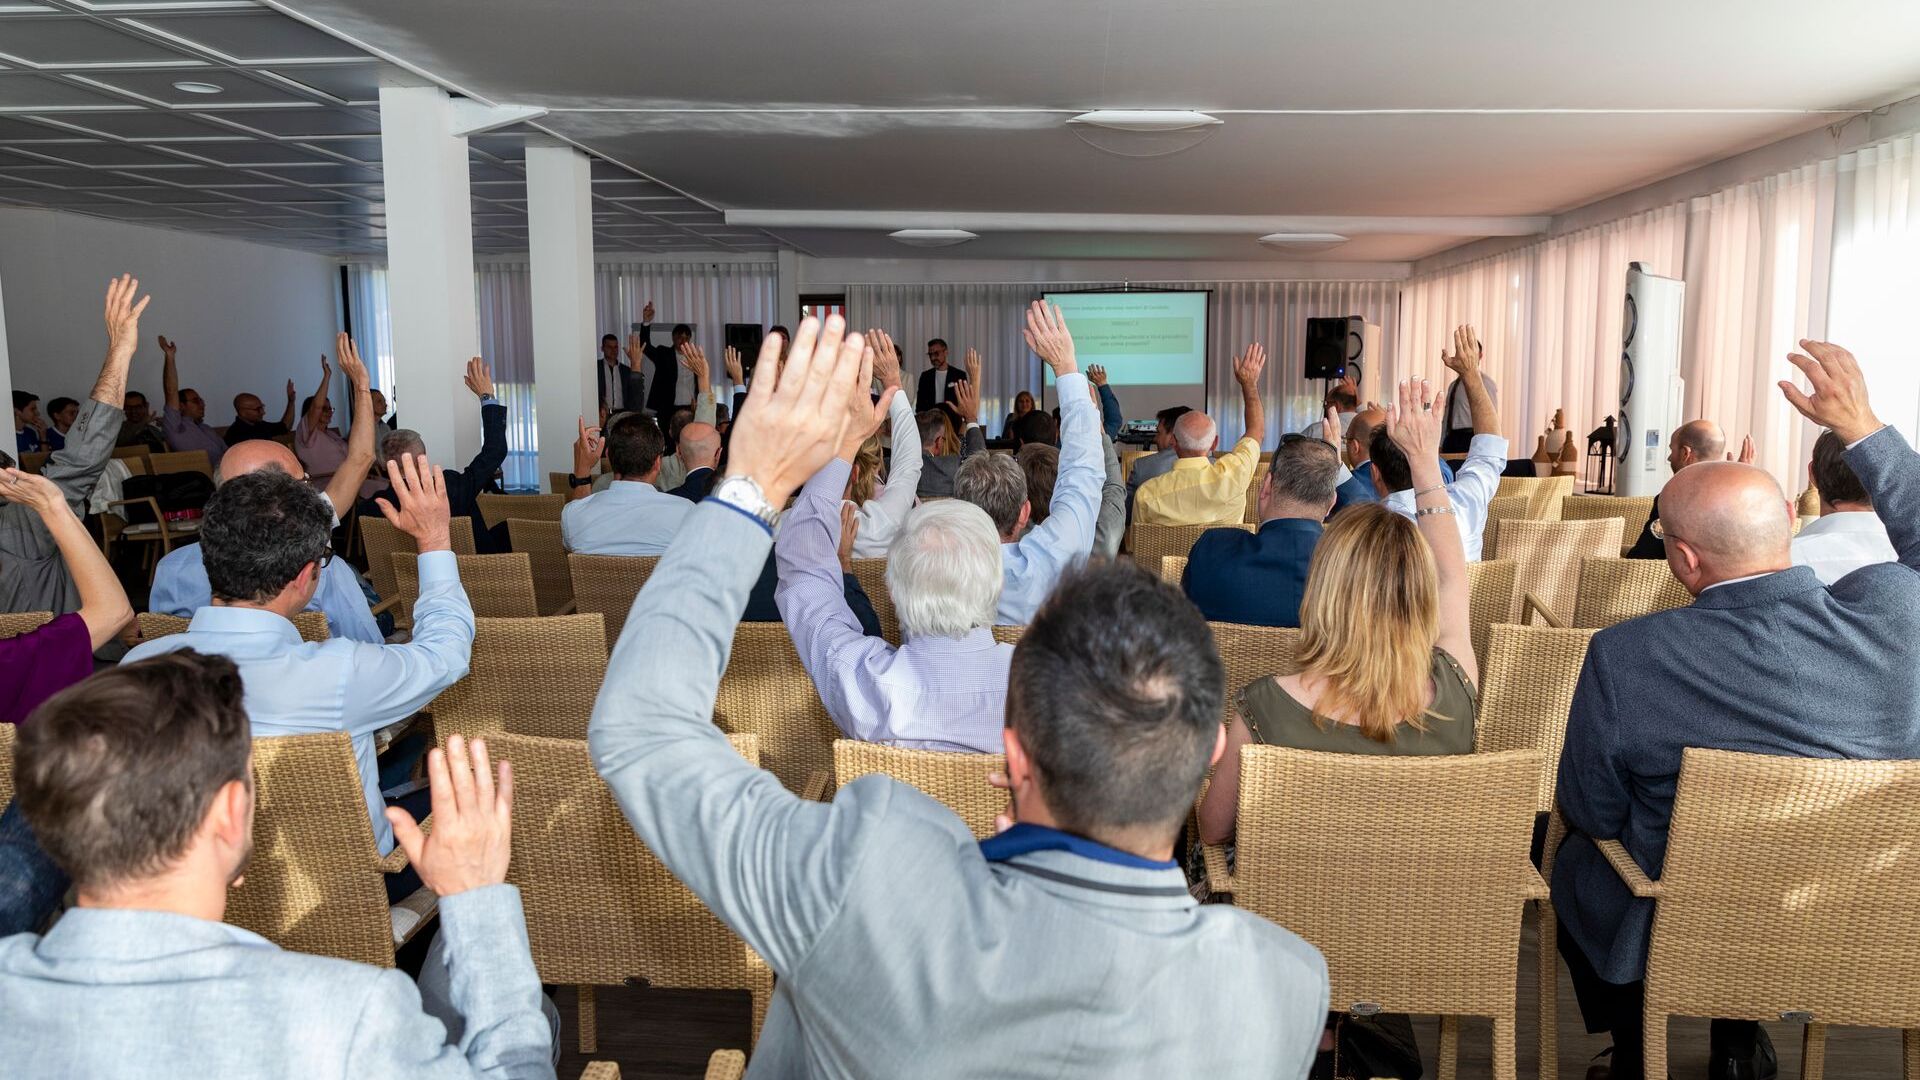 L'assemblée générale ordinaire de l'association ated-ICT Ticino s'est tenue le 7 juin 2022 à Cadro